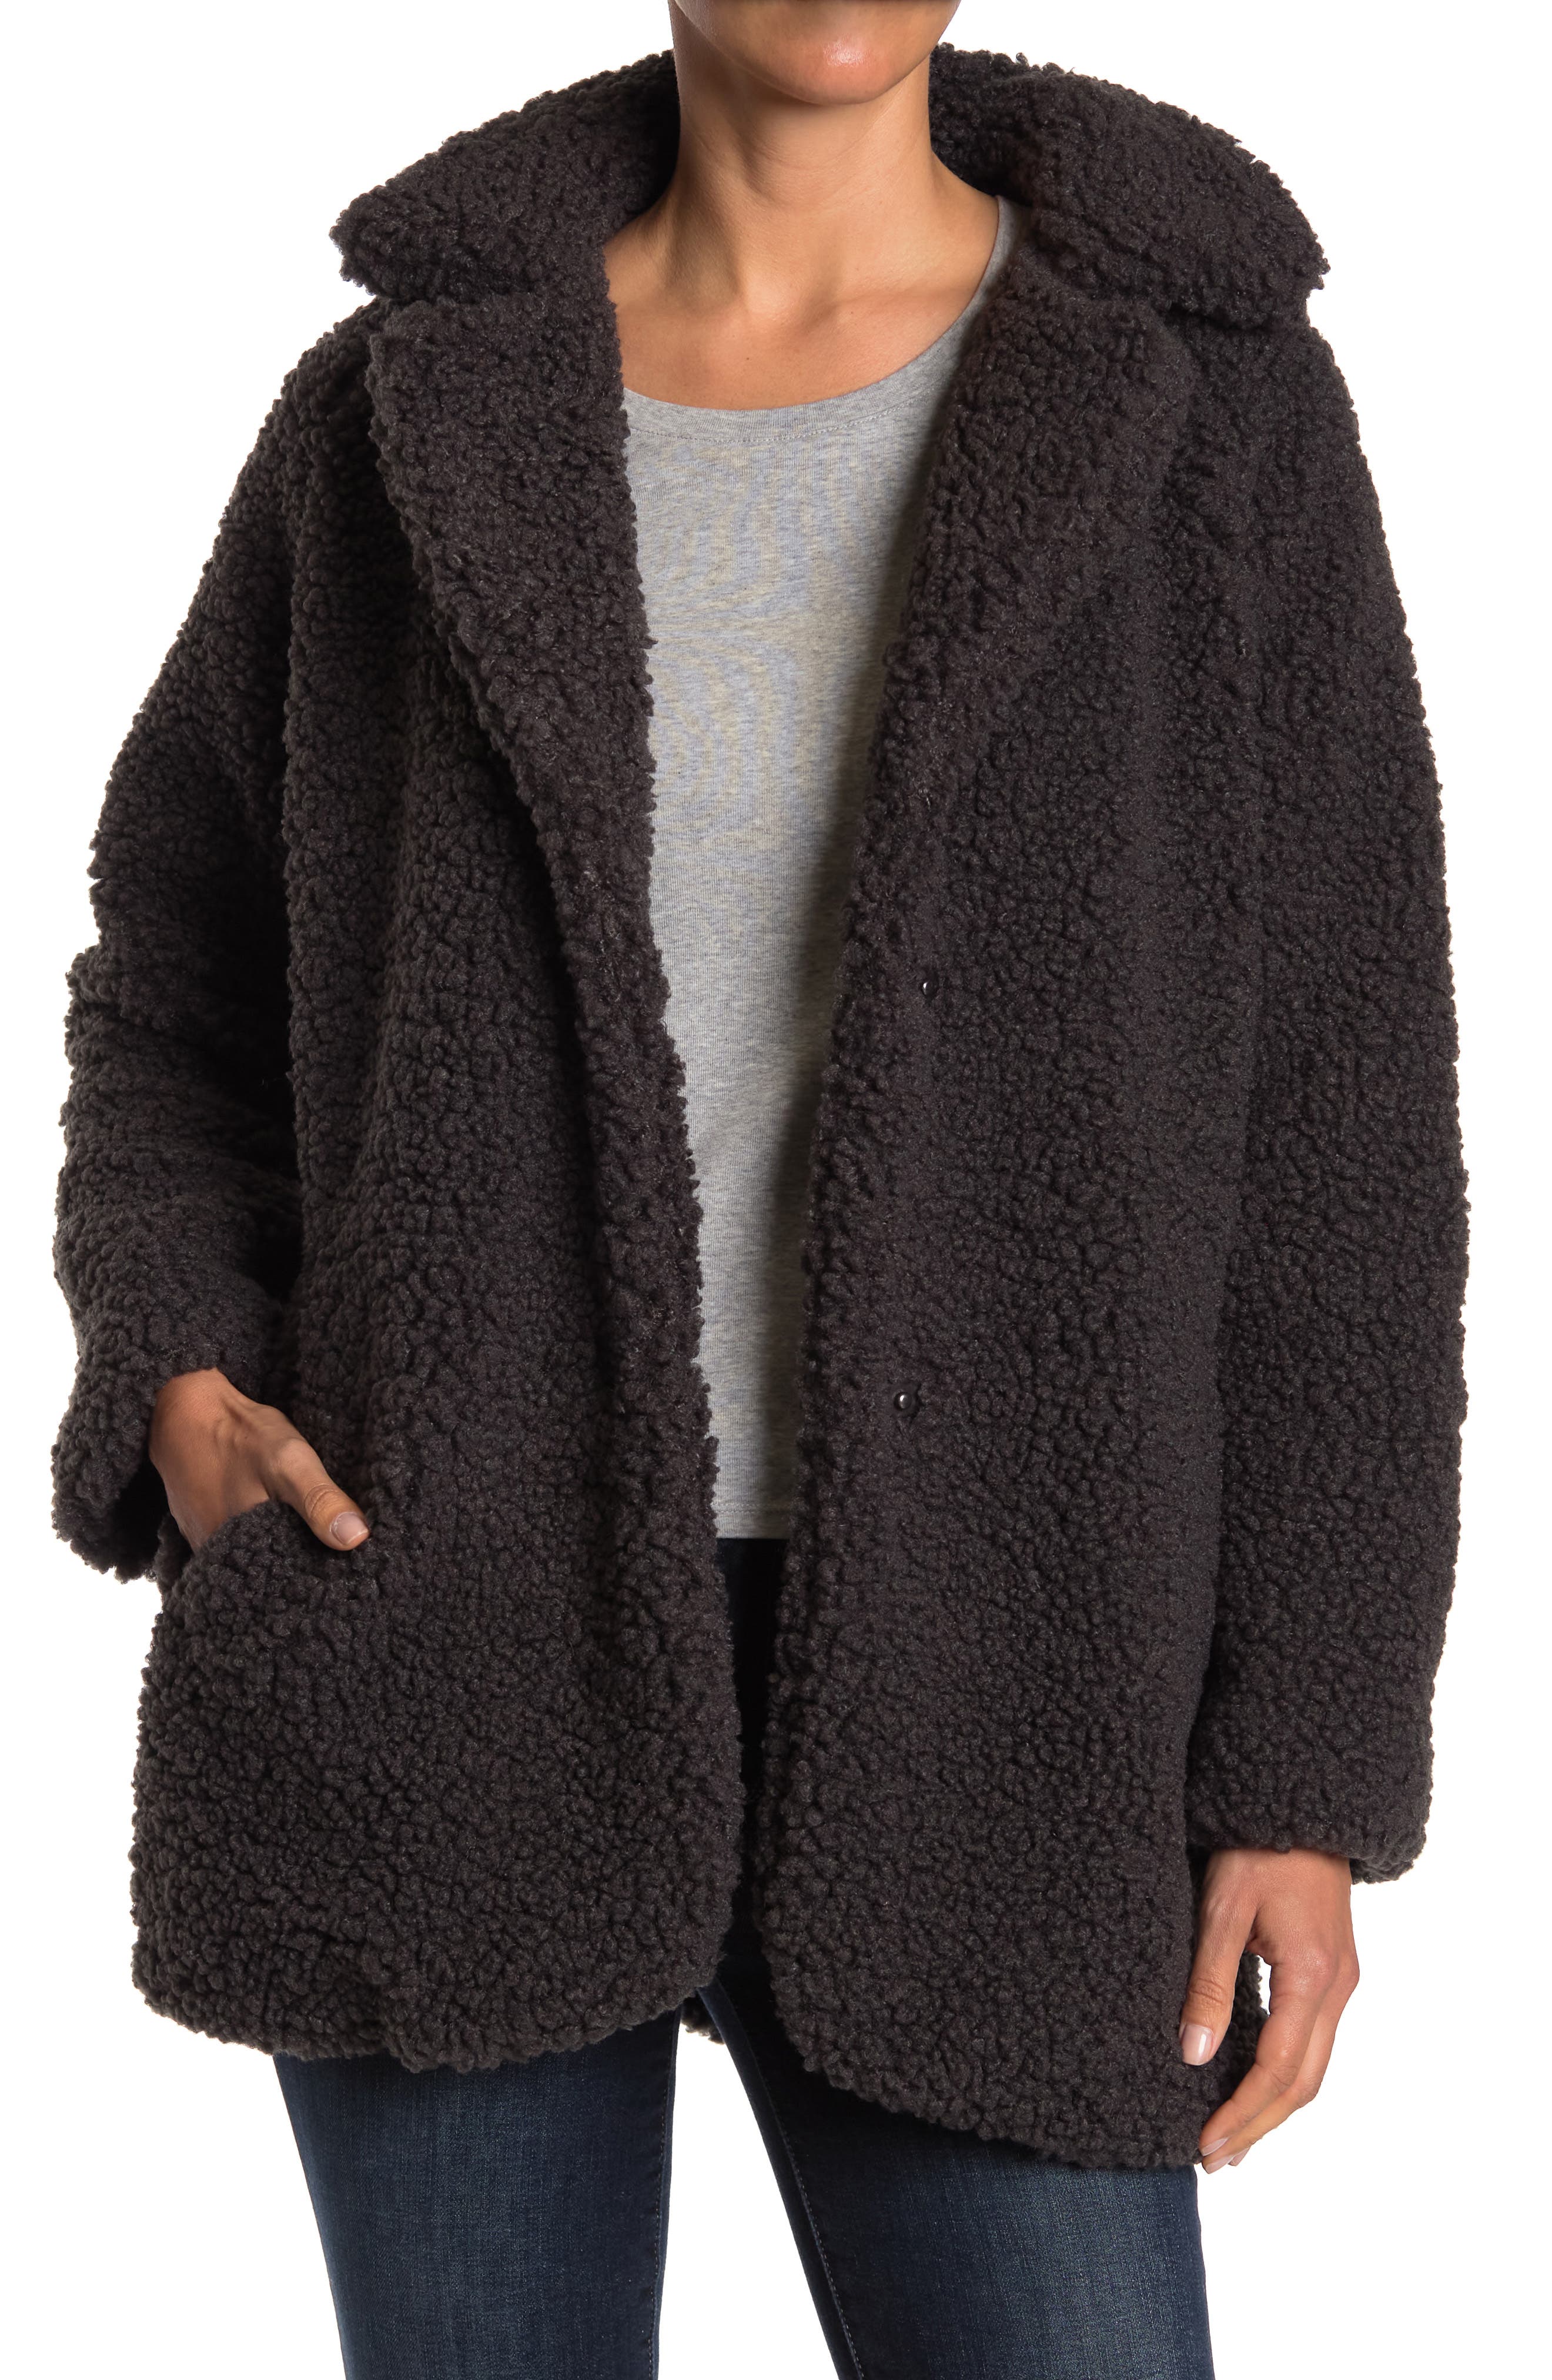 Women's Faux Fur Teddy Bear Fleece Coat Ladies Jacket Sweater Hooded Overcoat 